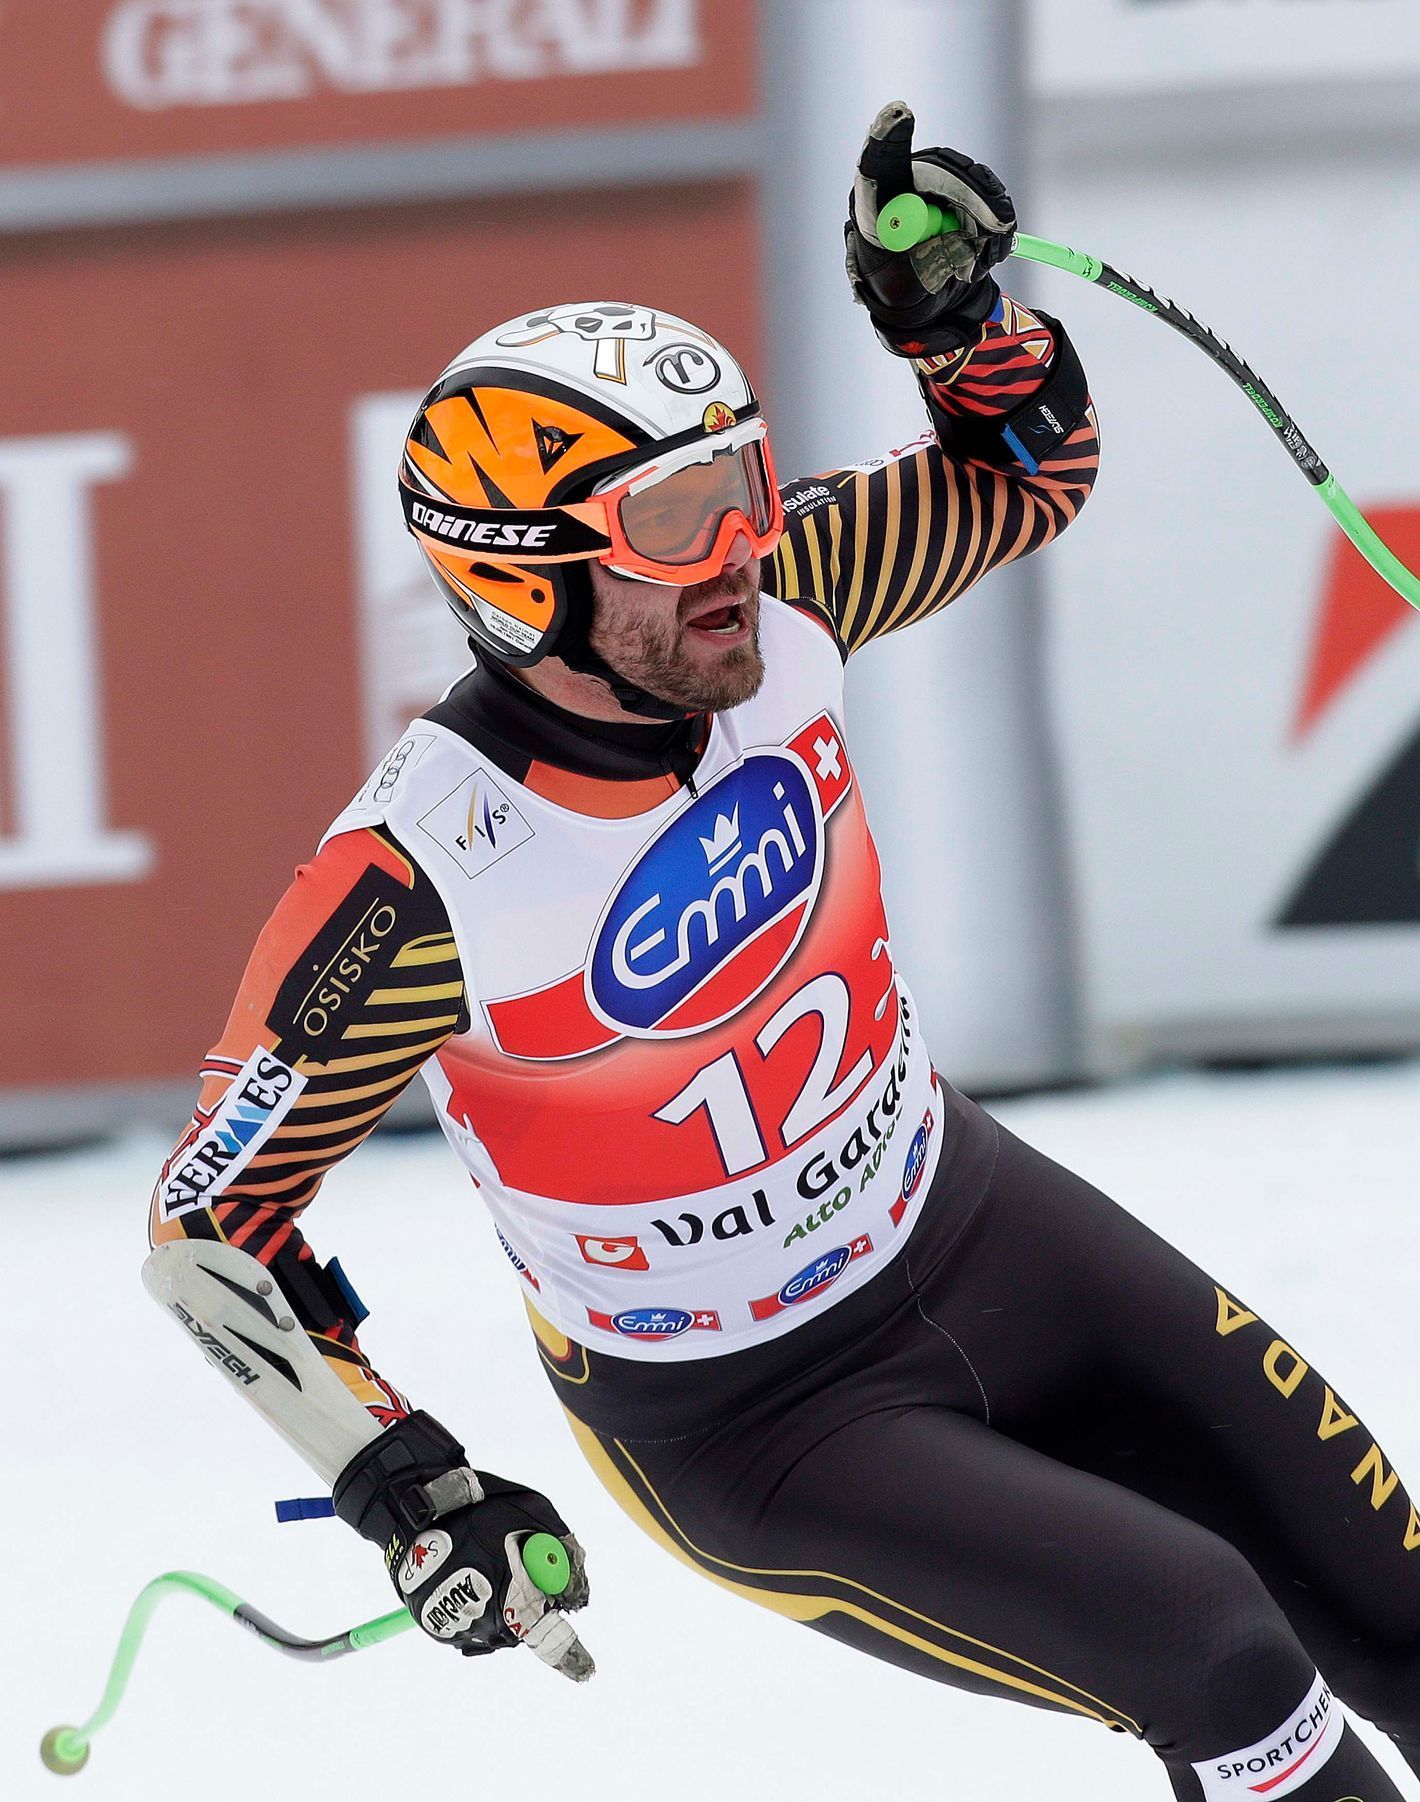 Kanadský lyžař Jan Hudec po super-G v italské Val Gardeně